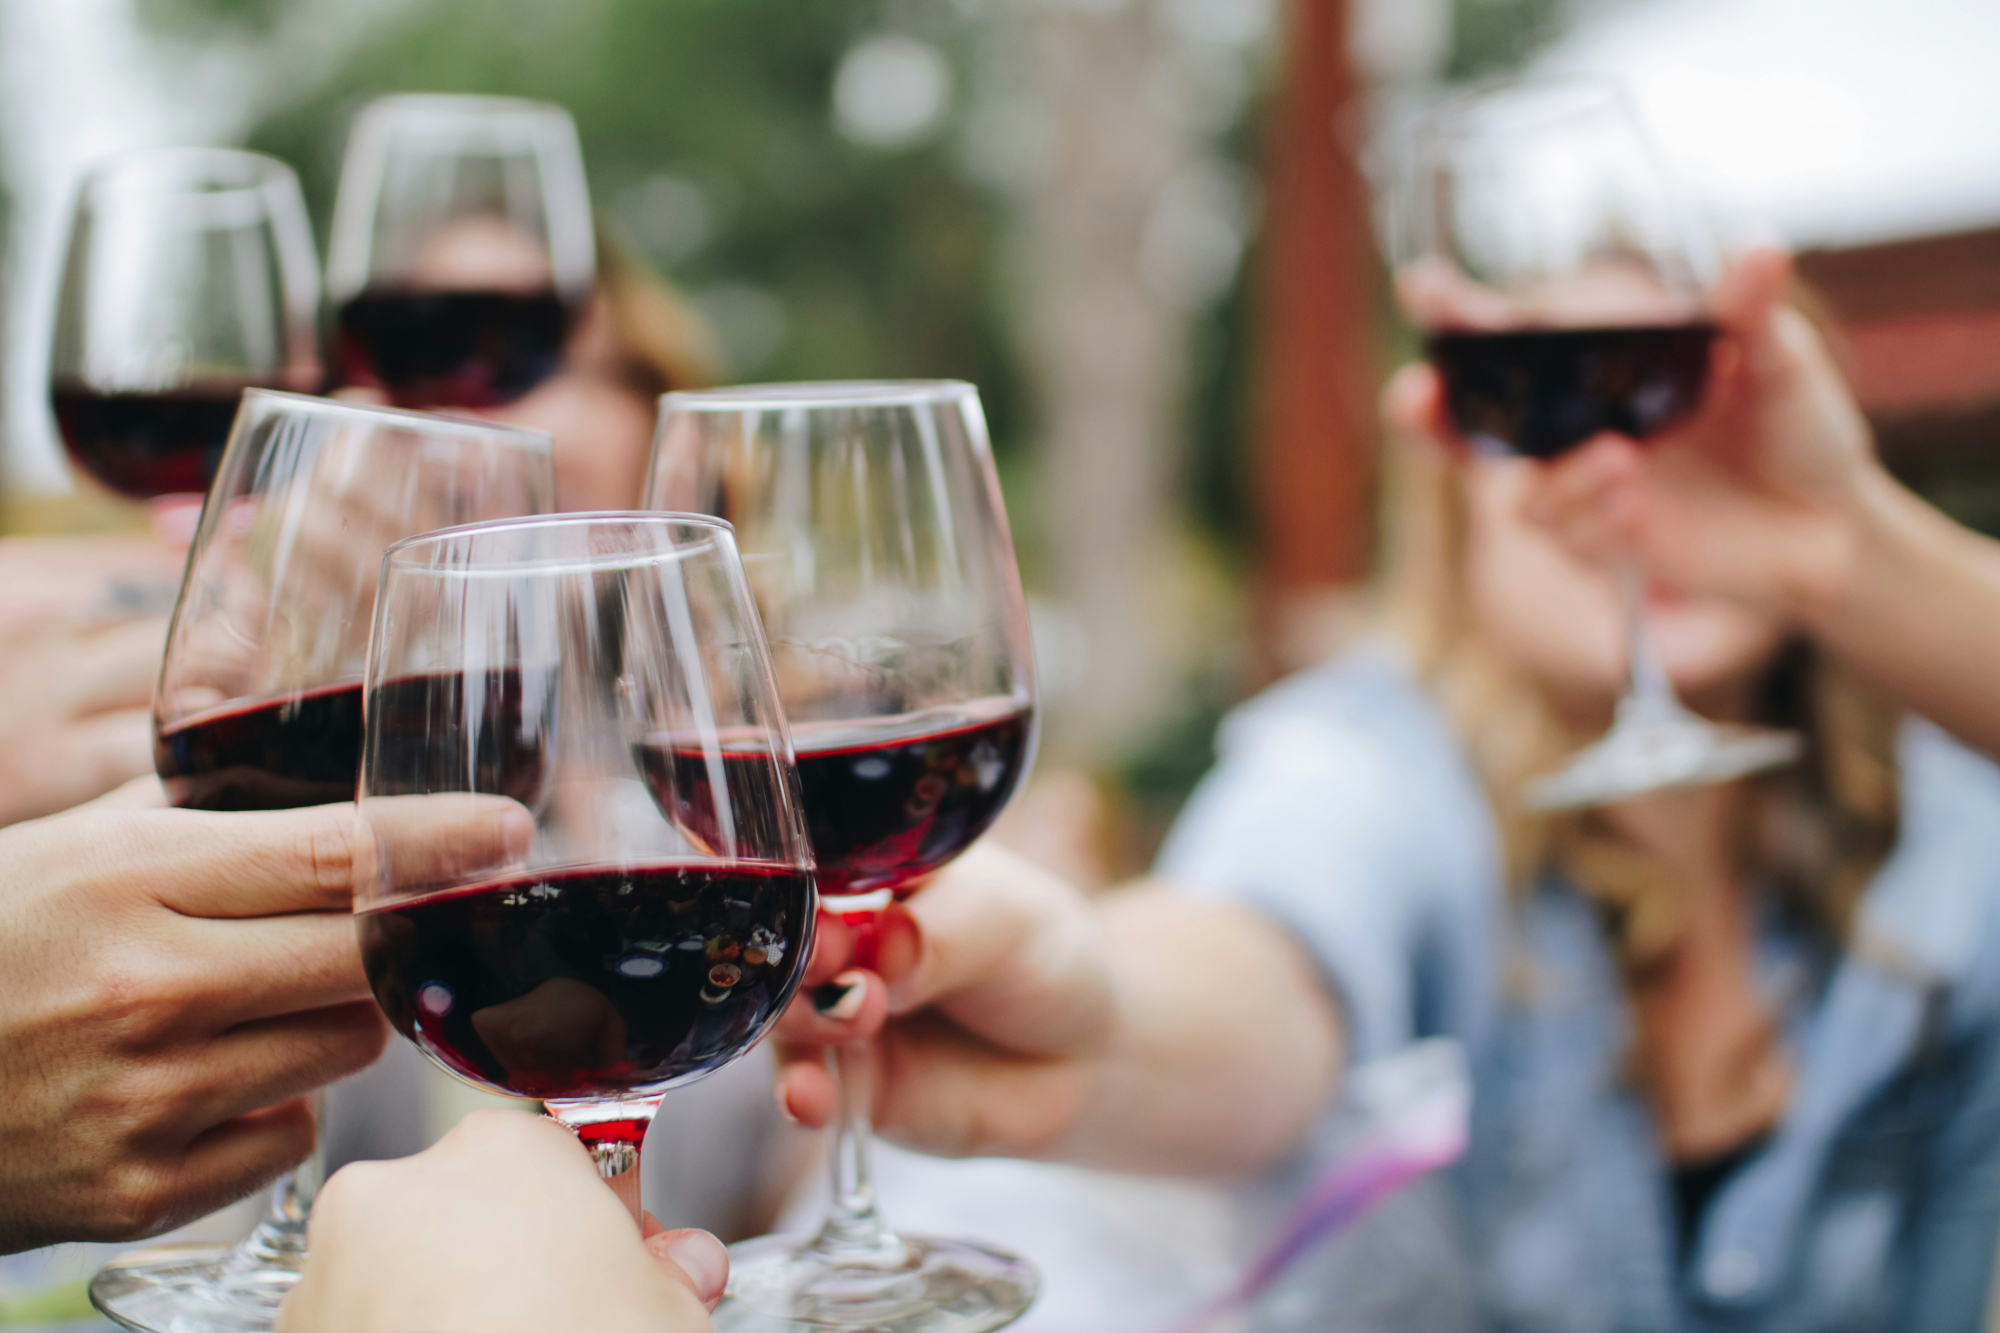 découvrez une sélection de vins rouges de qualité. trouvez le vin parfait pour accompagner vos repas et déguster des saveurs riches et intenses.